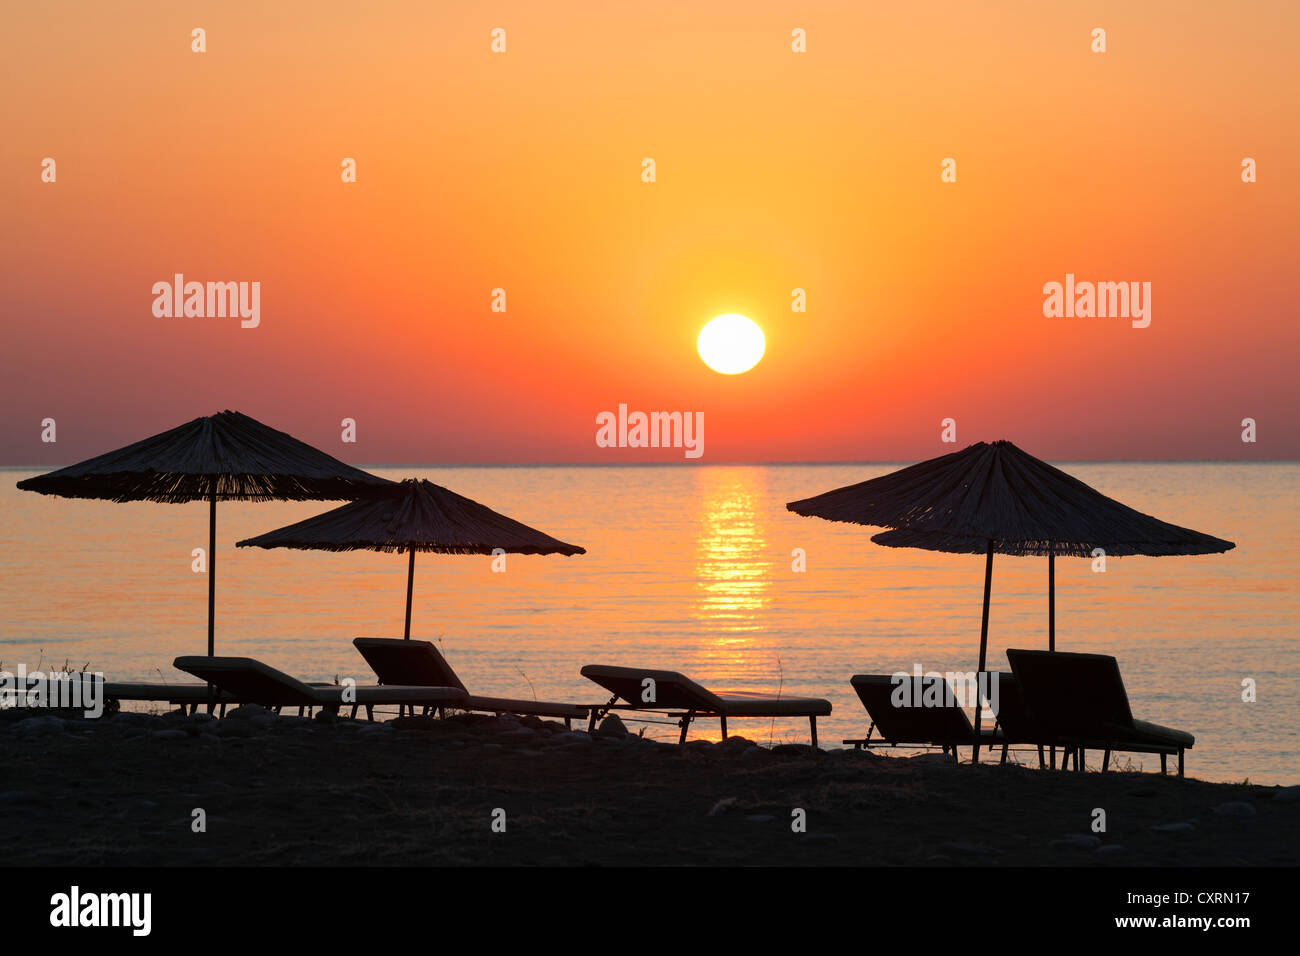 Sedie a sdraio e ombrelloni sulla spiaggia al tramonto, Lycian coast, Lycia, il Mar Egeo e il Mar Mediterraneo, la Turchia, Asia Minore Foto Stock